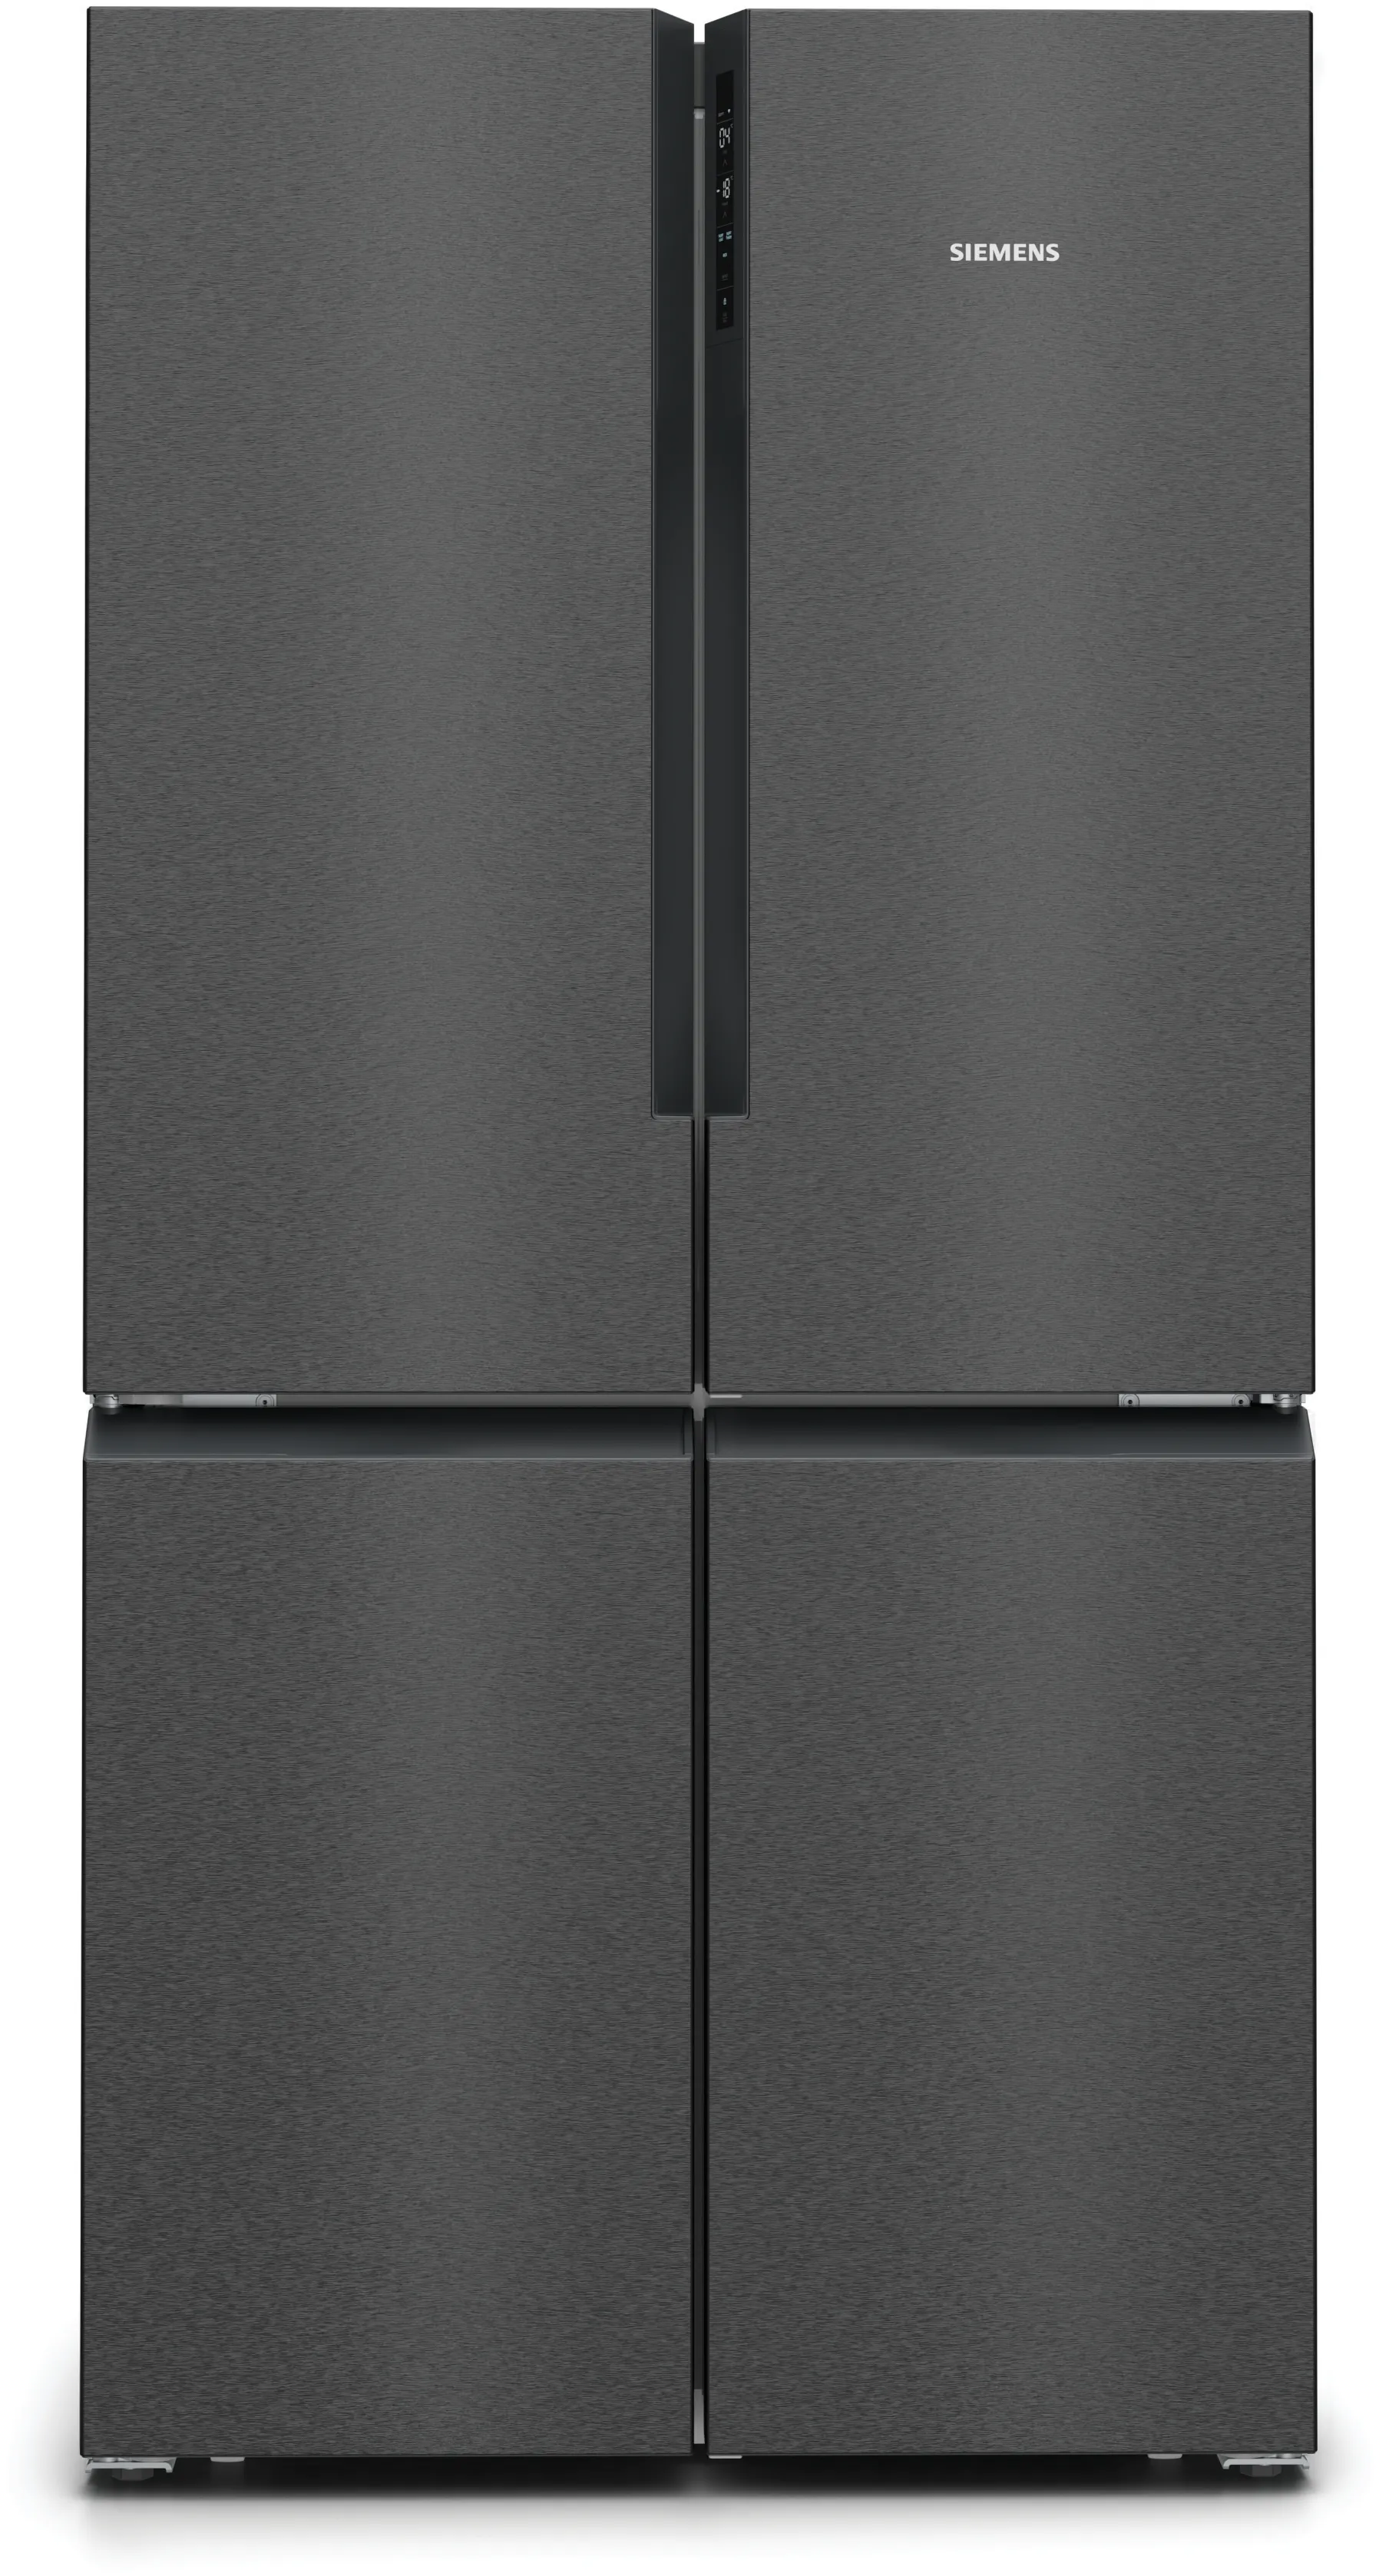 IQ300 French Door Bottom freezer, multi door 183 x 90.5 cm Black stainless steel 